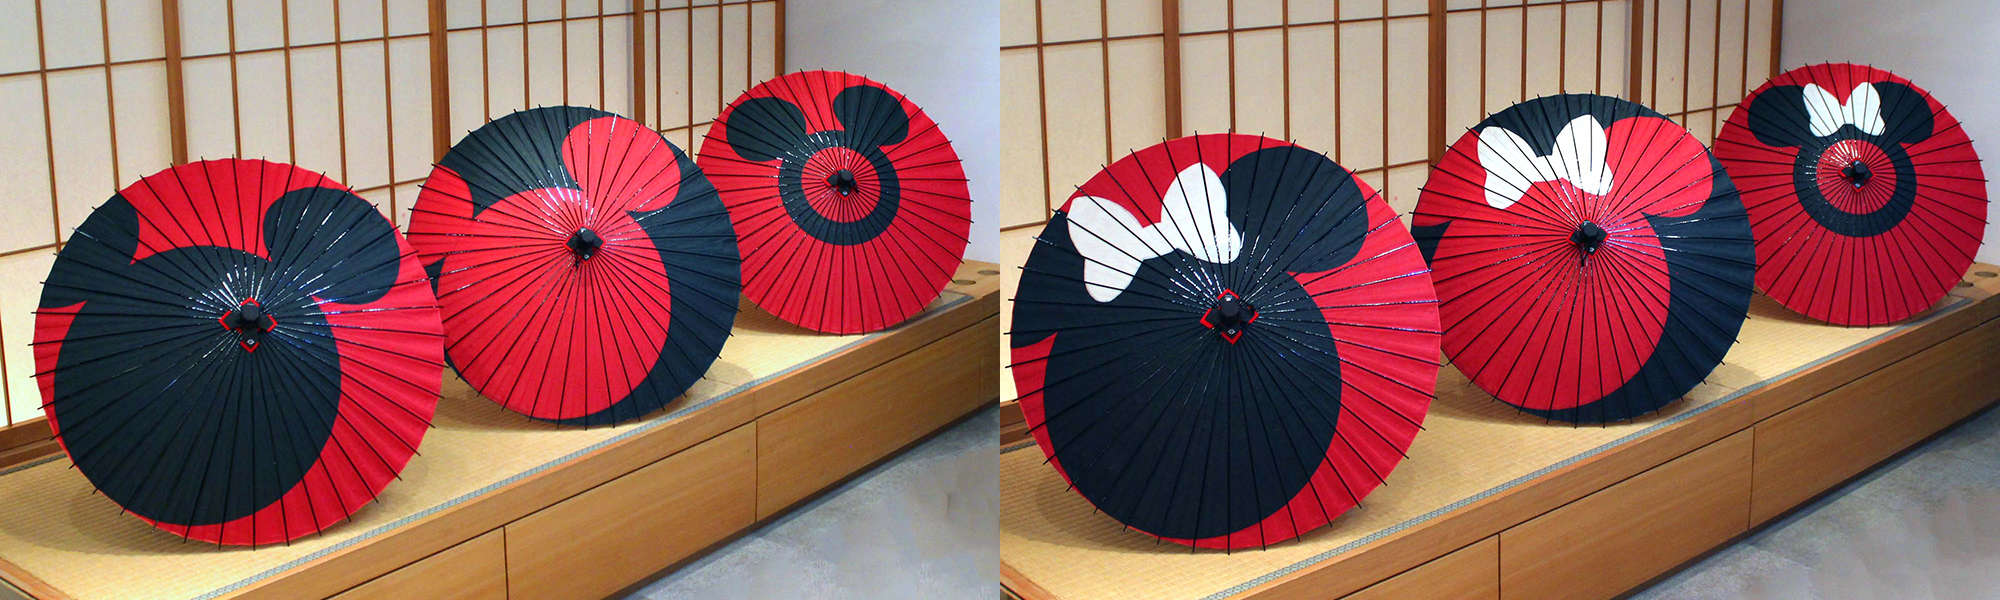 ディズニー 京都伝統工芸シリーズ 電話注文商品 日本最古の和傘屋辻倉